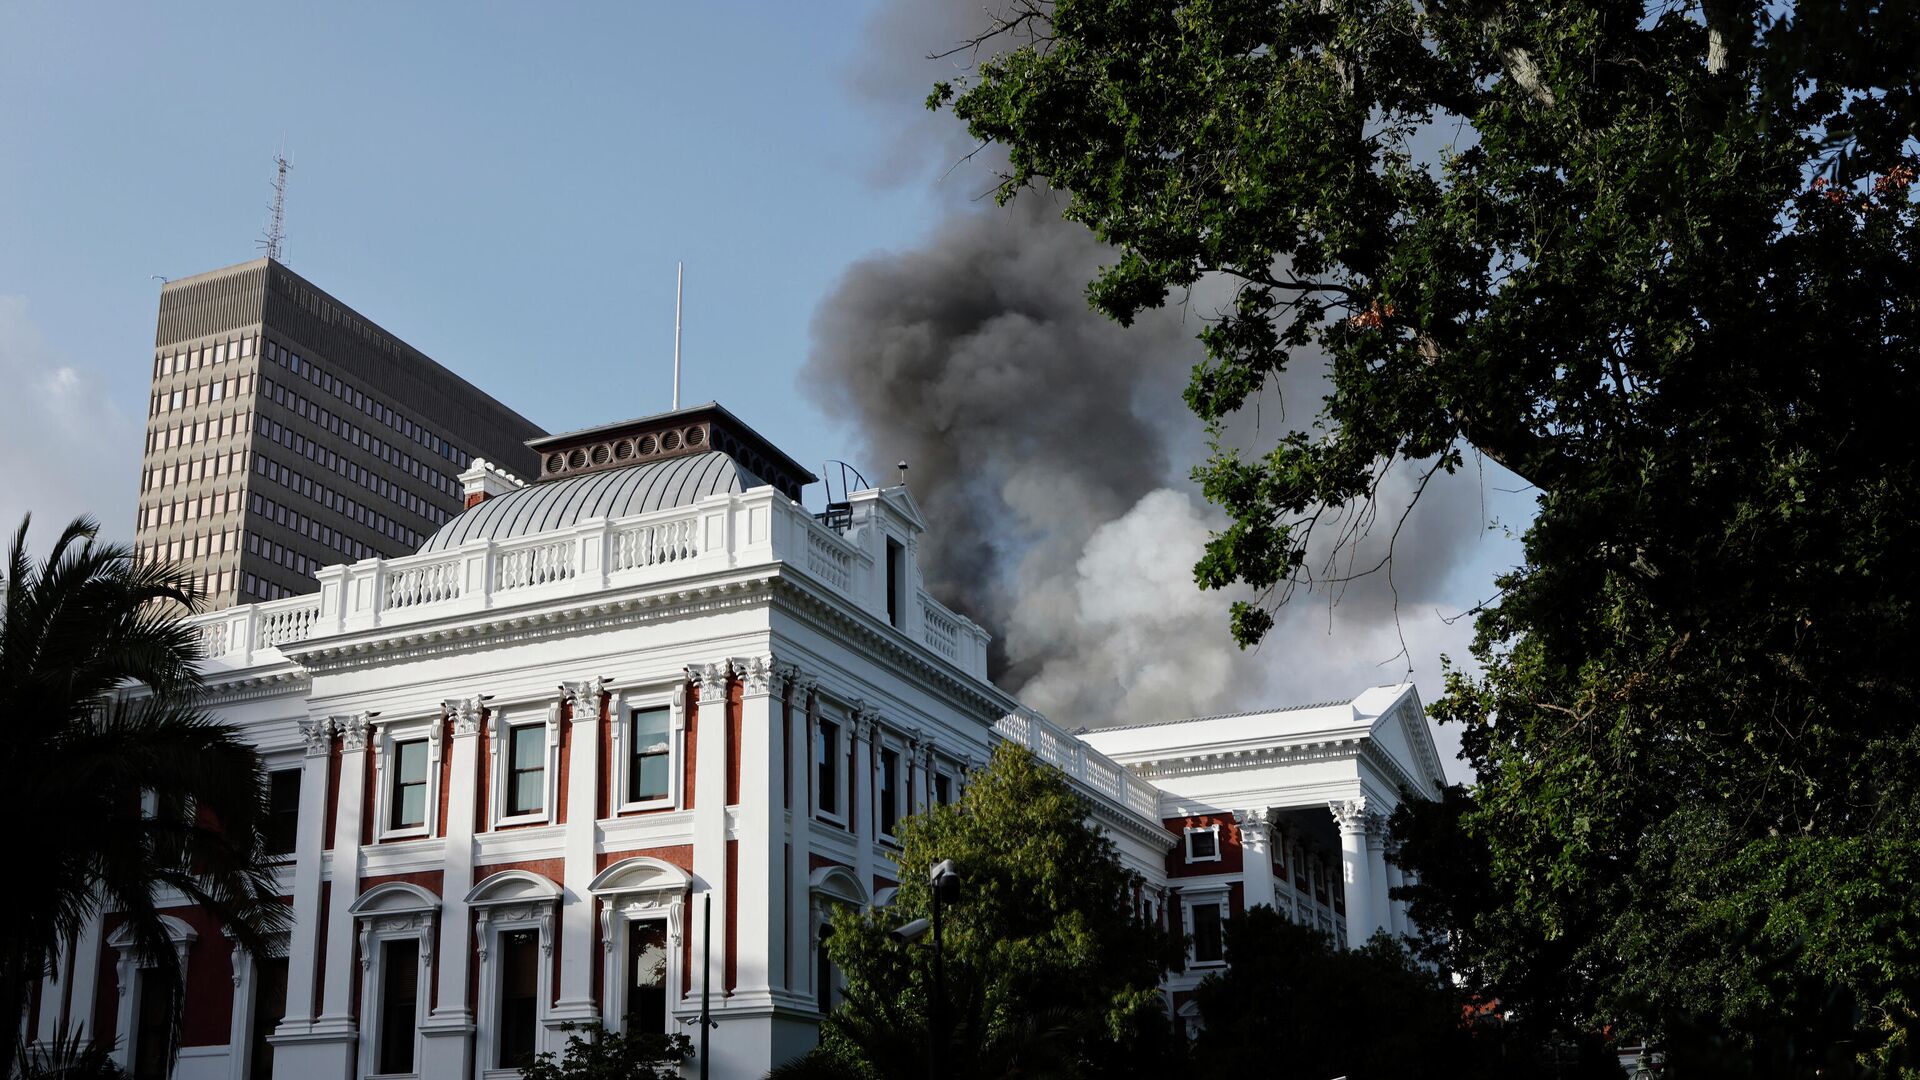 Дымовые клубы поднимаются с крыши здания у здания парламента Южной Африки в Кейптауне 2 января 2022 года во время пожара - Sputnik Беларусь, 1920, 02.01.2022